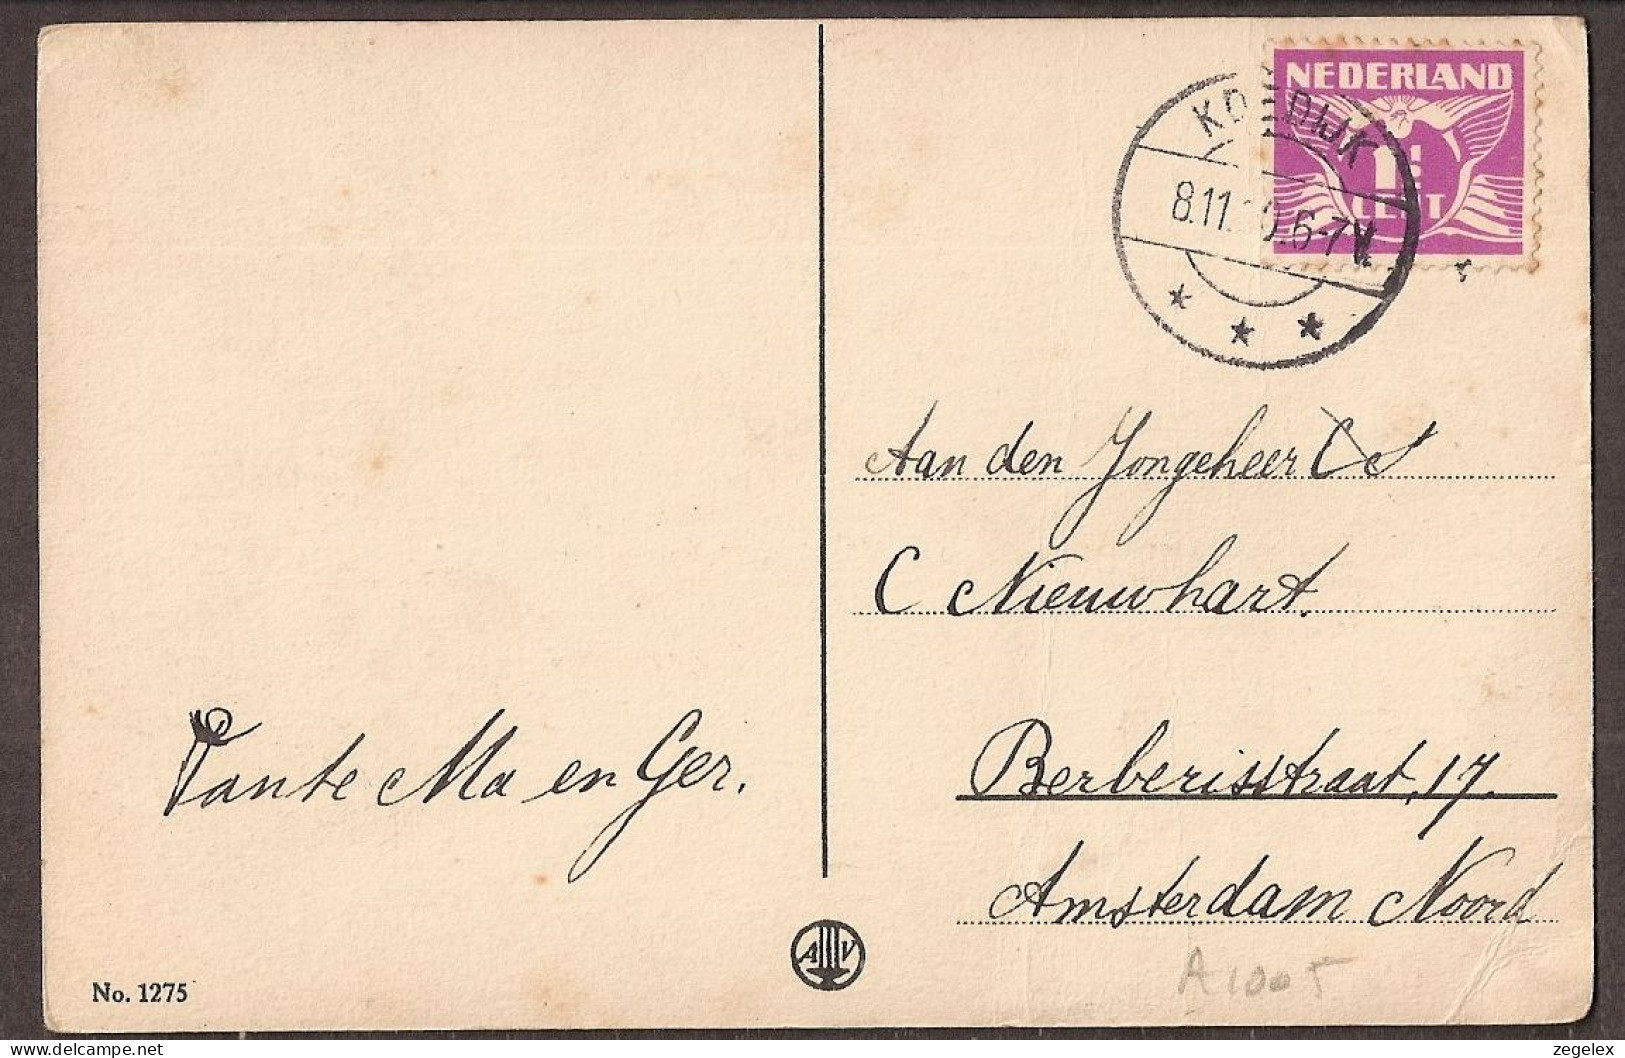 Petit Garçon Sur La Montagne - Jolie Carte Postale Ancienne 1930 - Vintage Card - Kindertekeningen